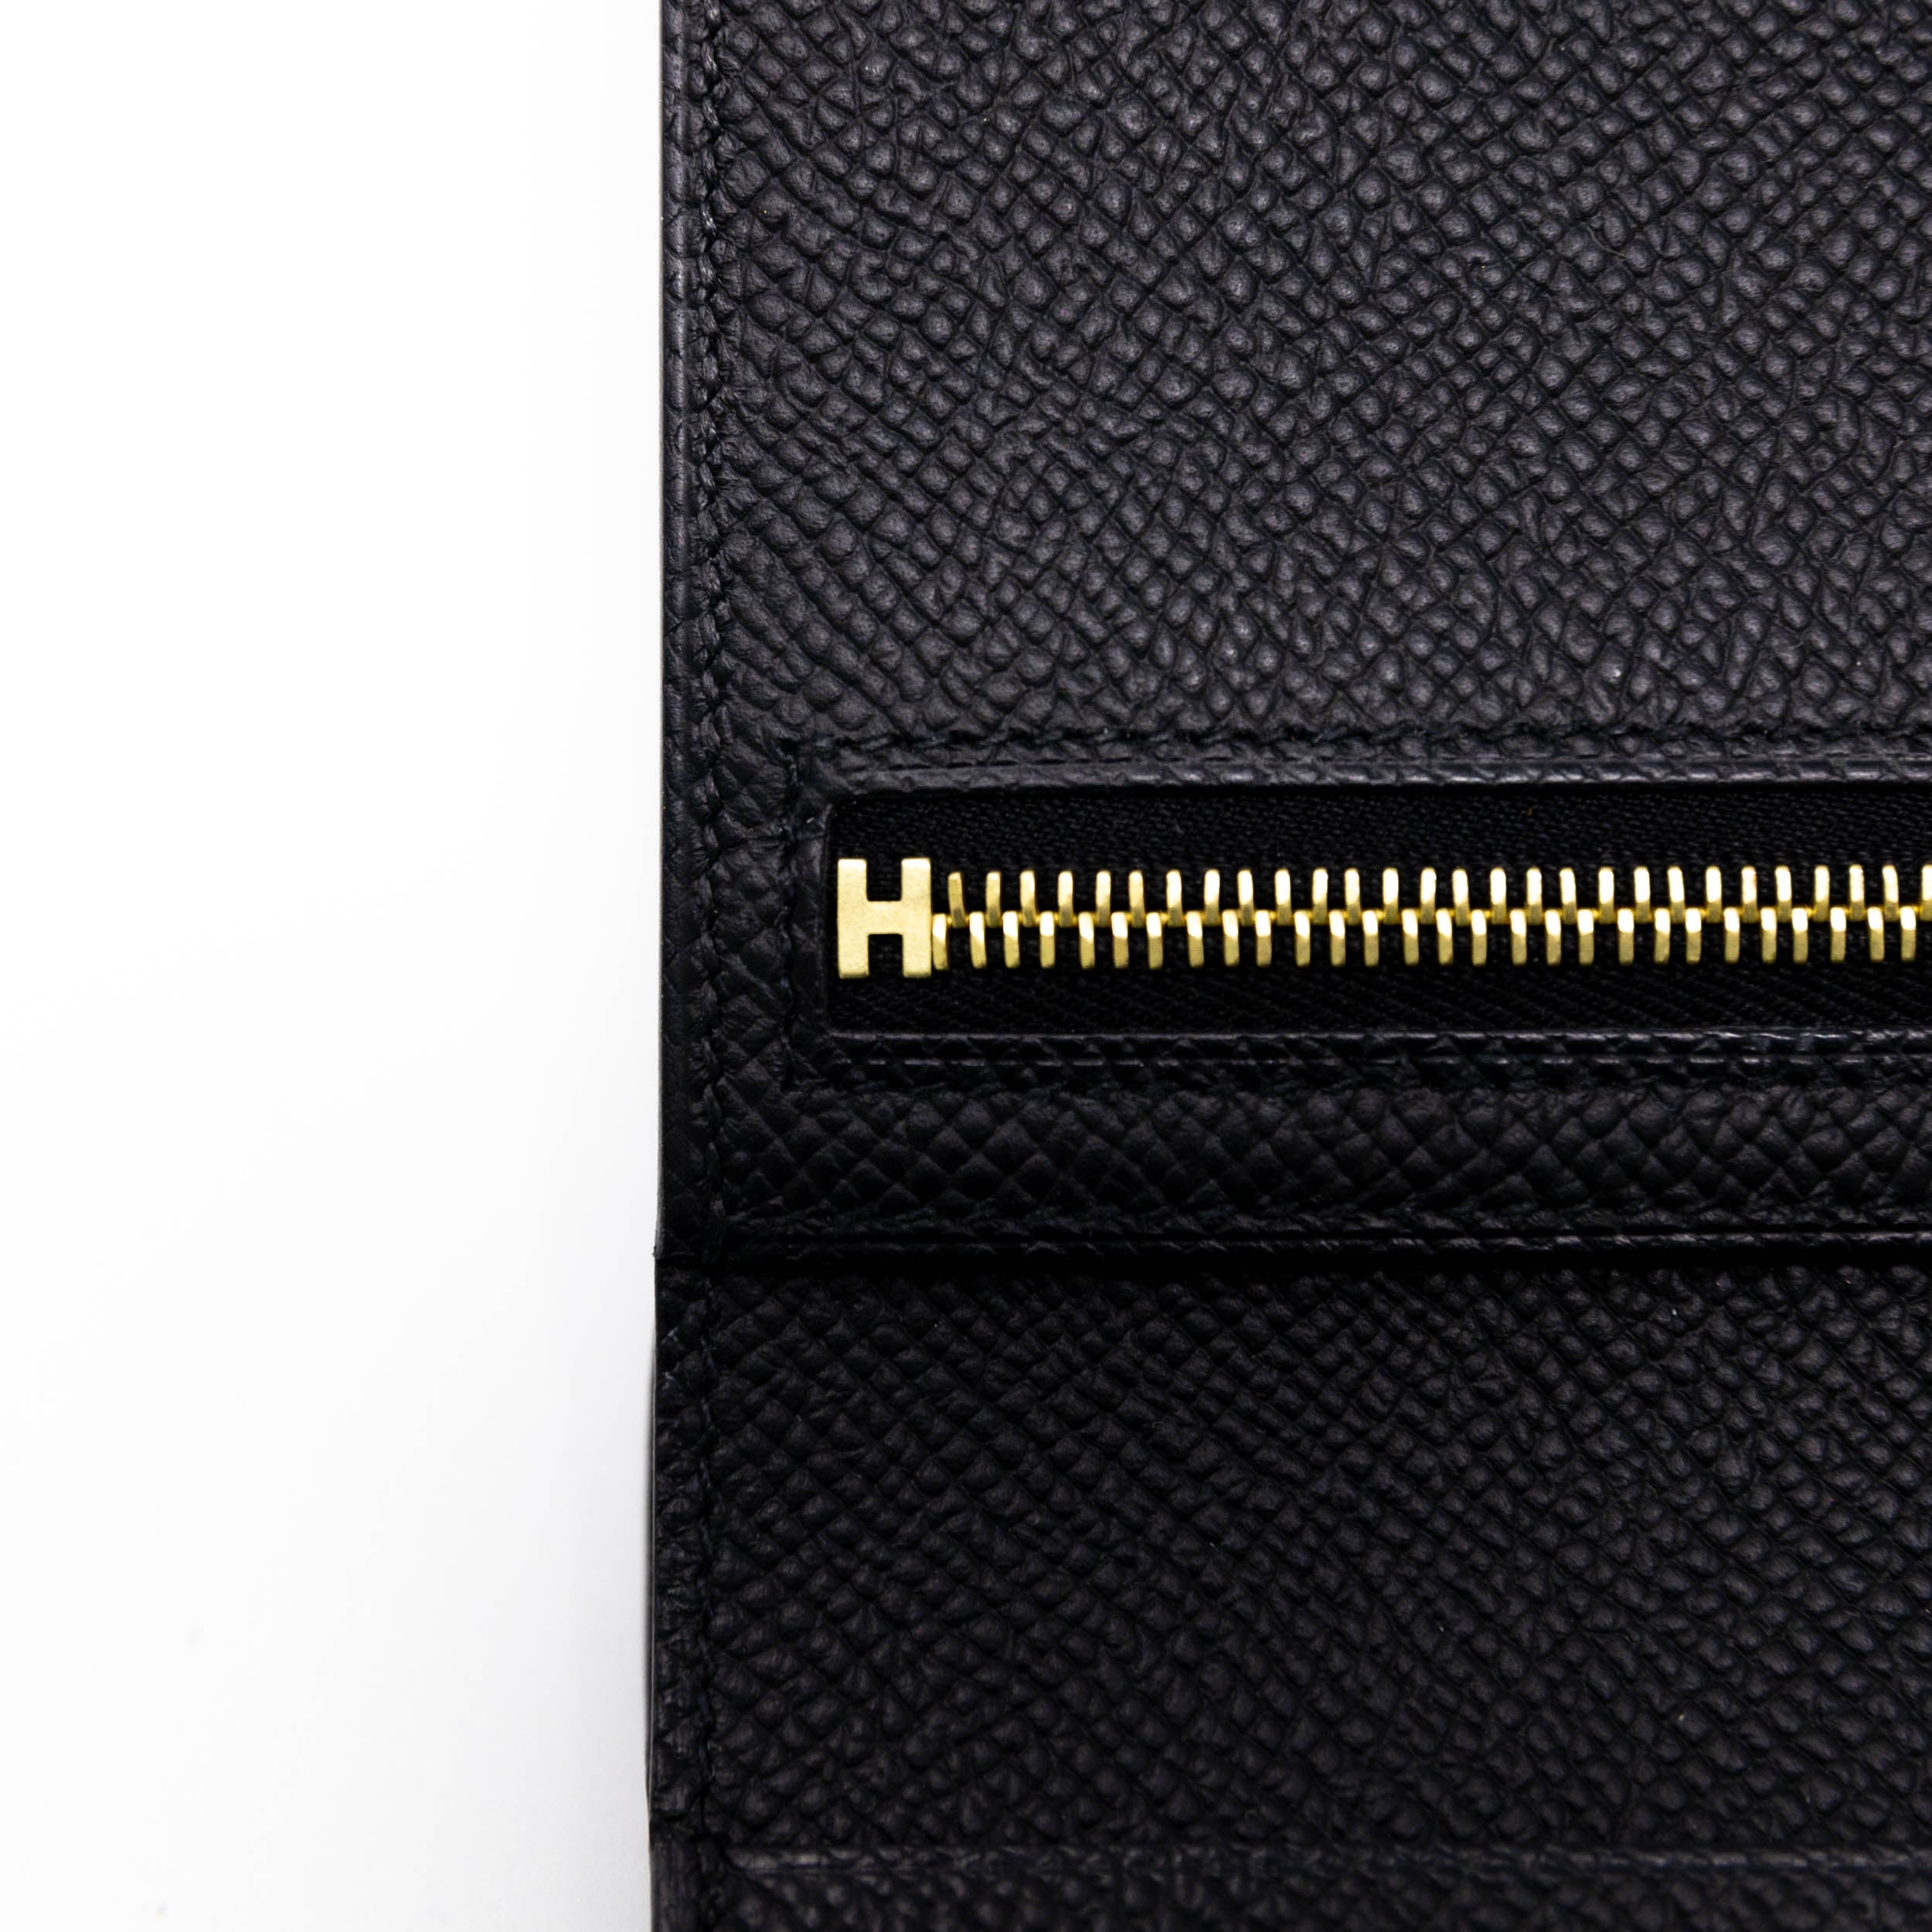 Hermes Noir Epsom Bearn Compact Wallet